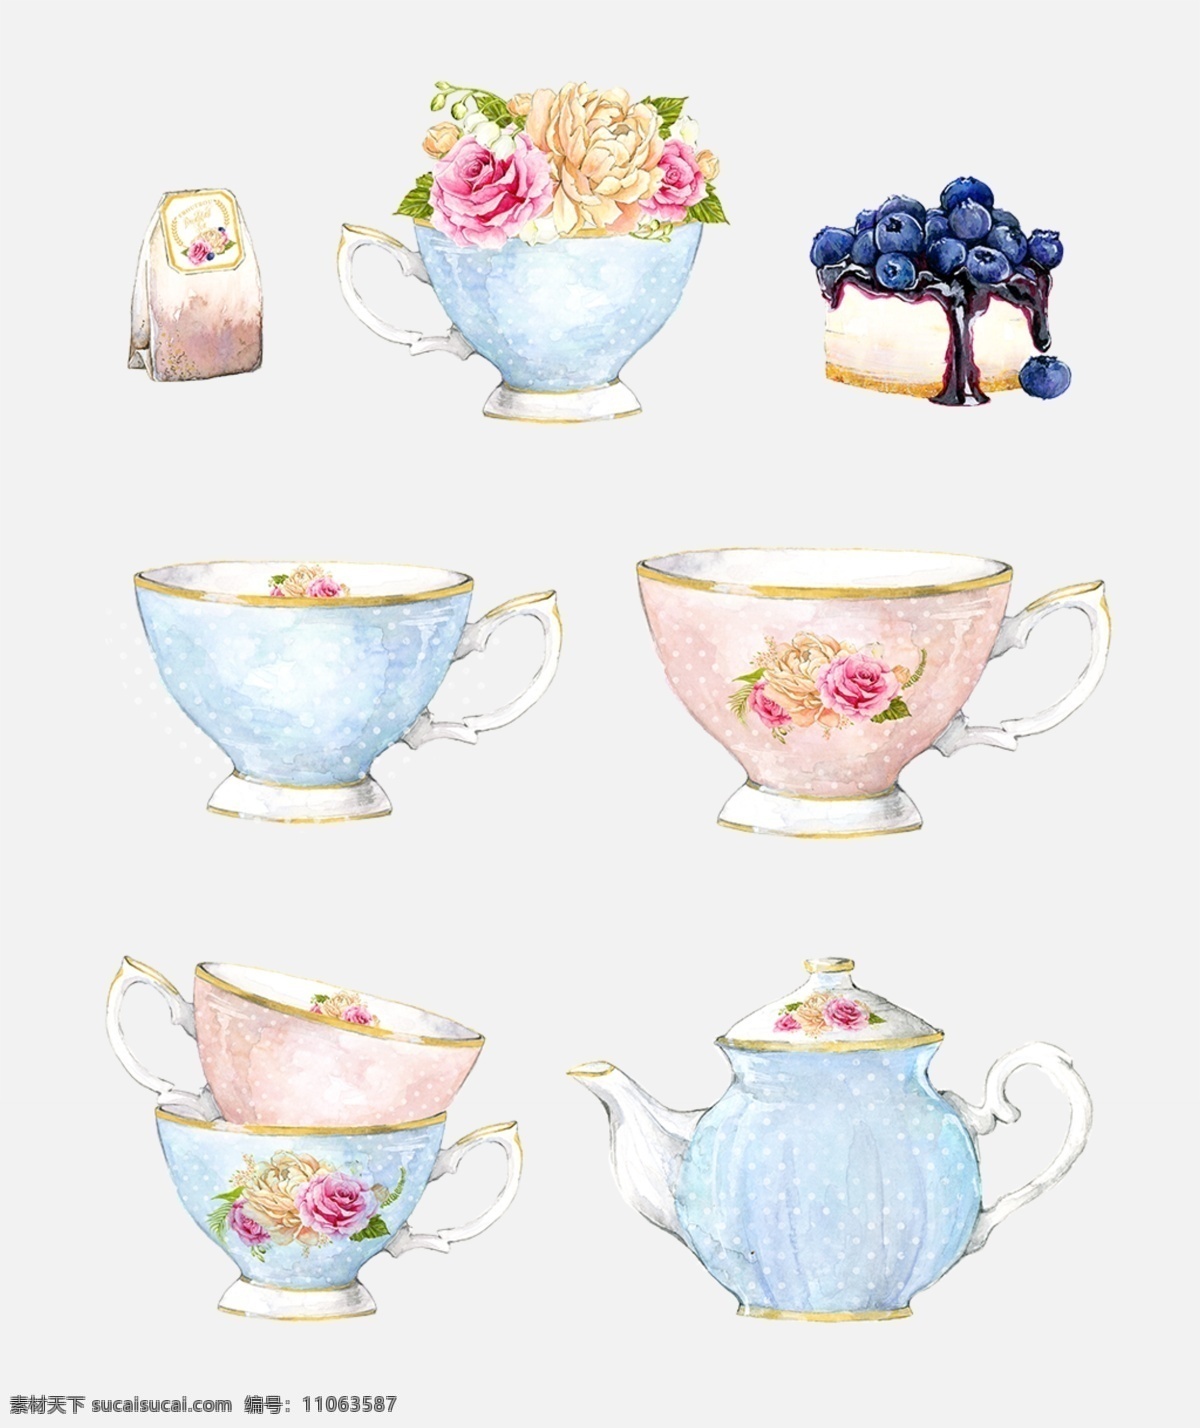 玫瑰 茶壶 下午 茶 唯美 手绘 水彩 玫瑰茶壶 下午茶 唯美手绘 蓝莓蛋糕 水彩ps素材